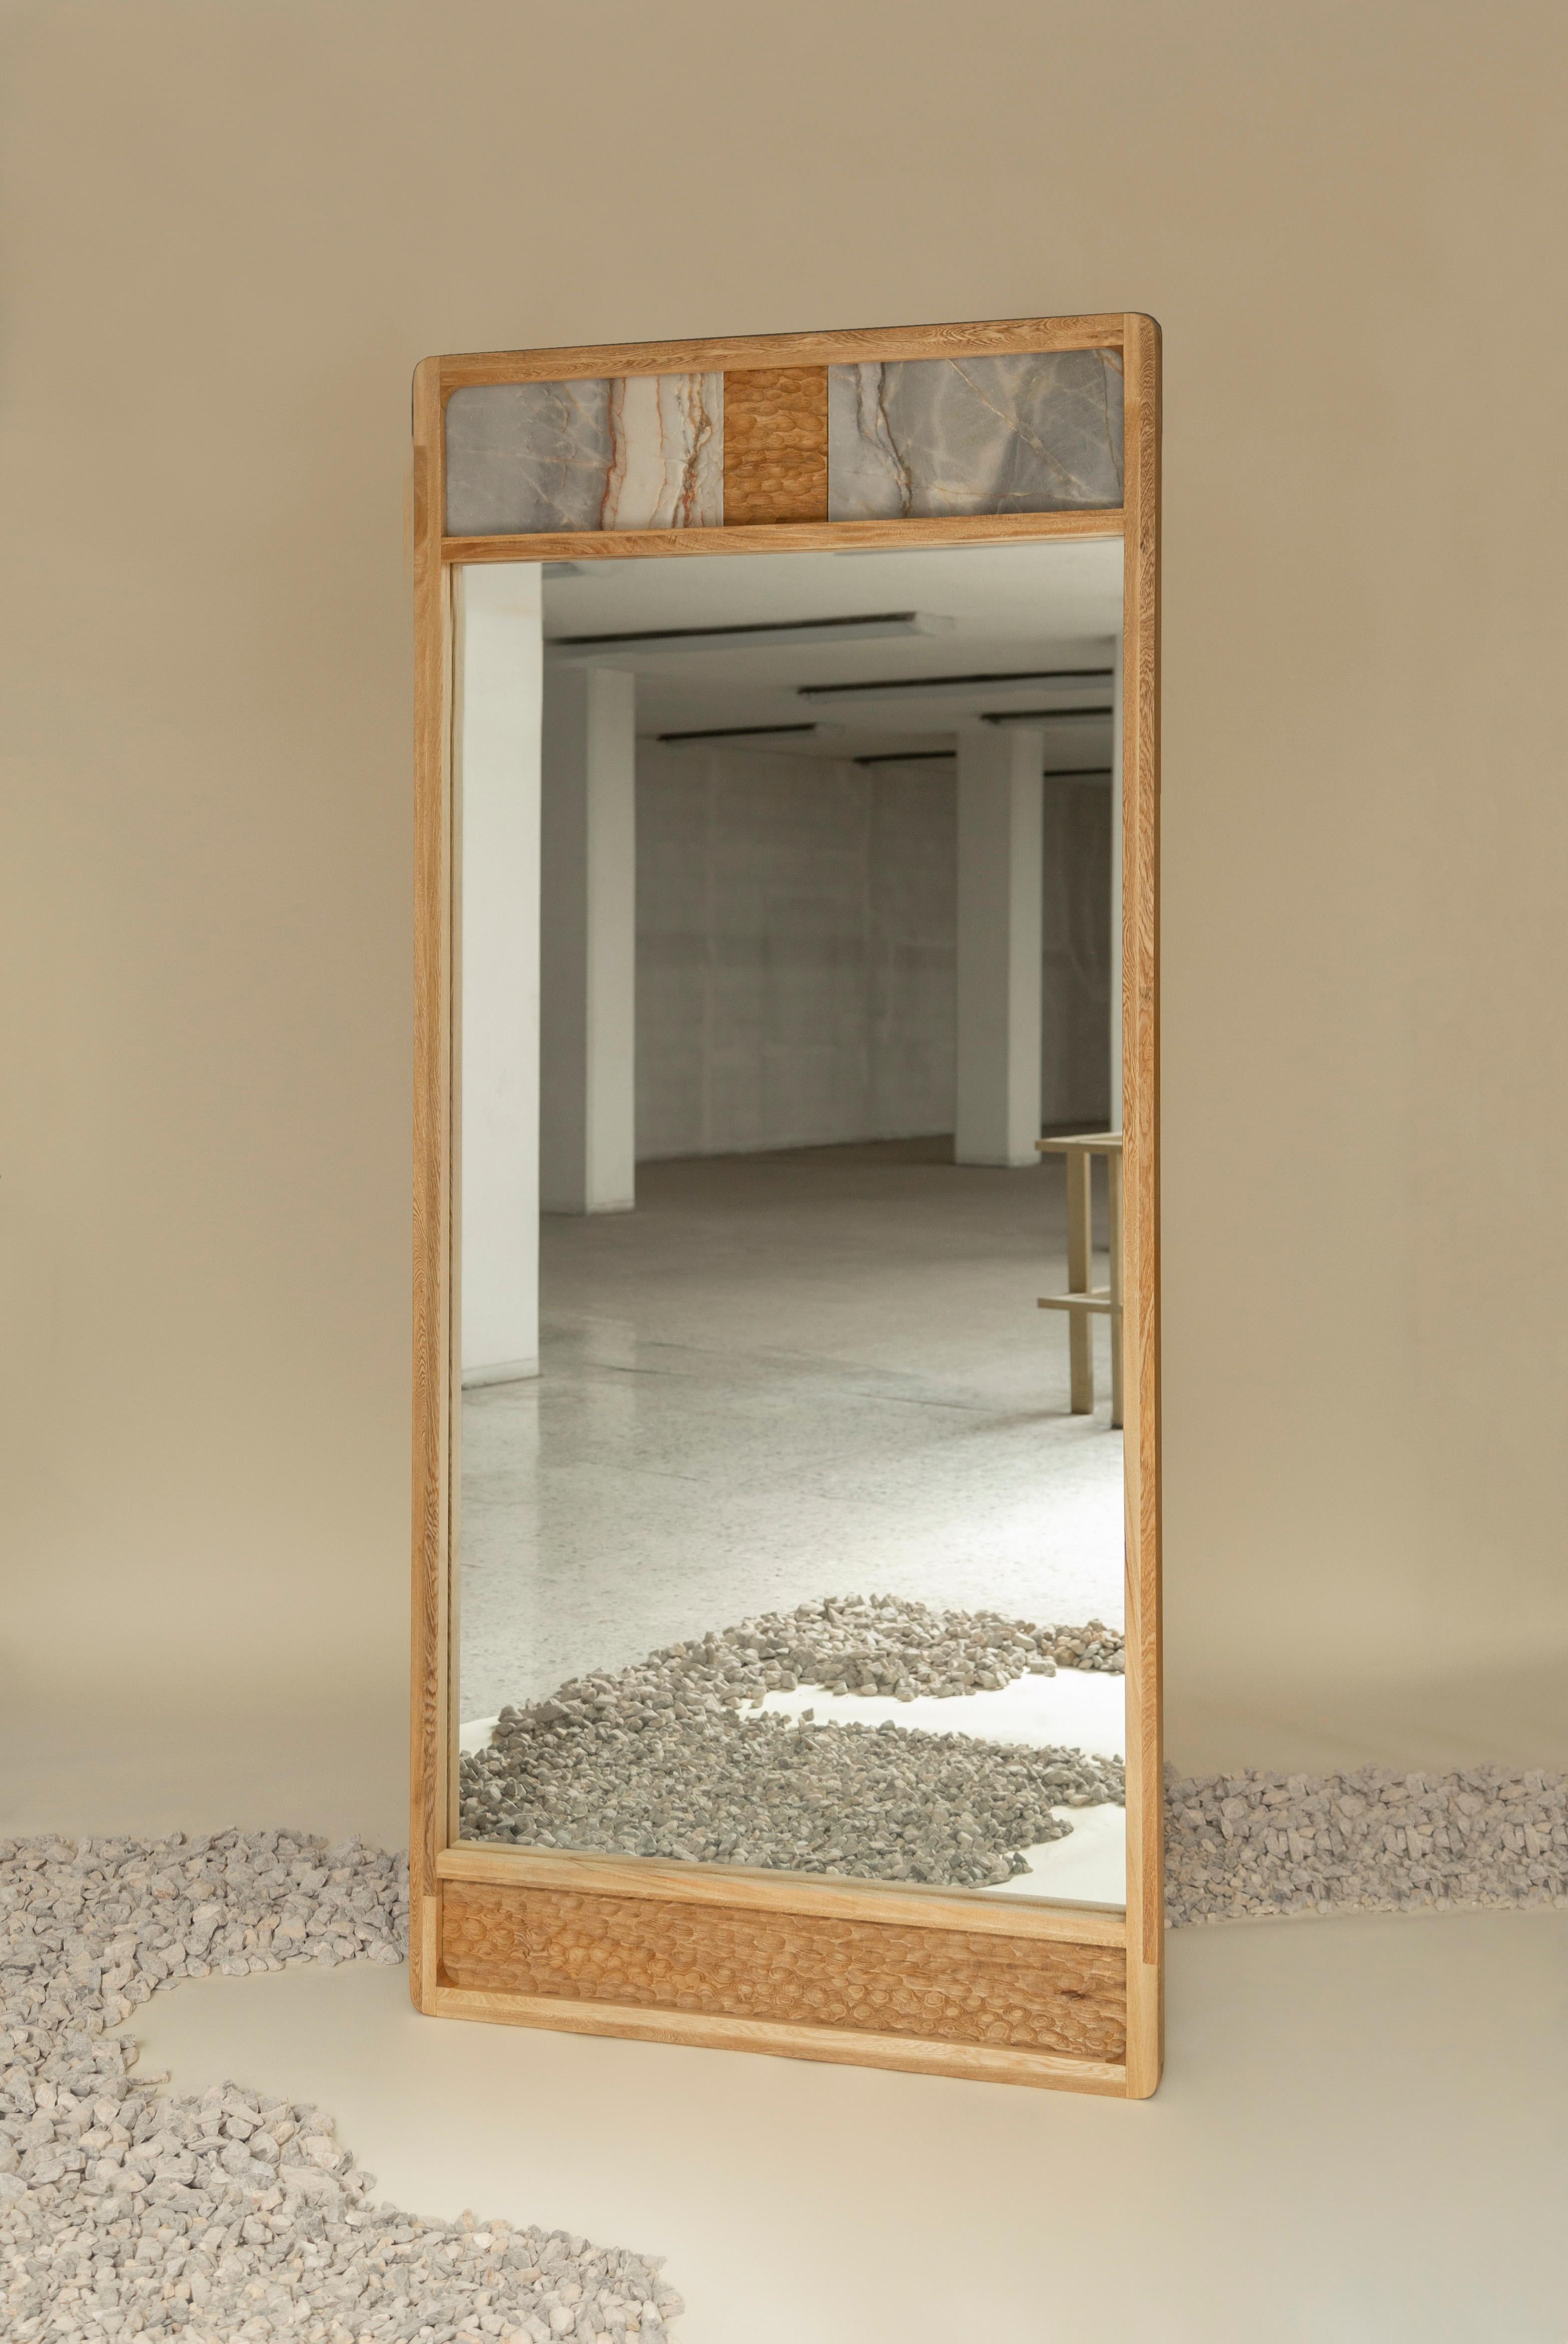 Der Bodenspiegel Mojave ist aus mexikanischem Rosa Morada-Holz gefertigt. Sie ist mit viel Liebe zum Detail handgefertigt. Die Mischung aus Marmor, Holz und Textur sorgt für ein unvergessliches Stück. Das Design passt gut zu Räumen unterschiedlicher